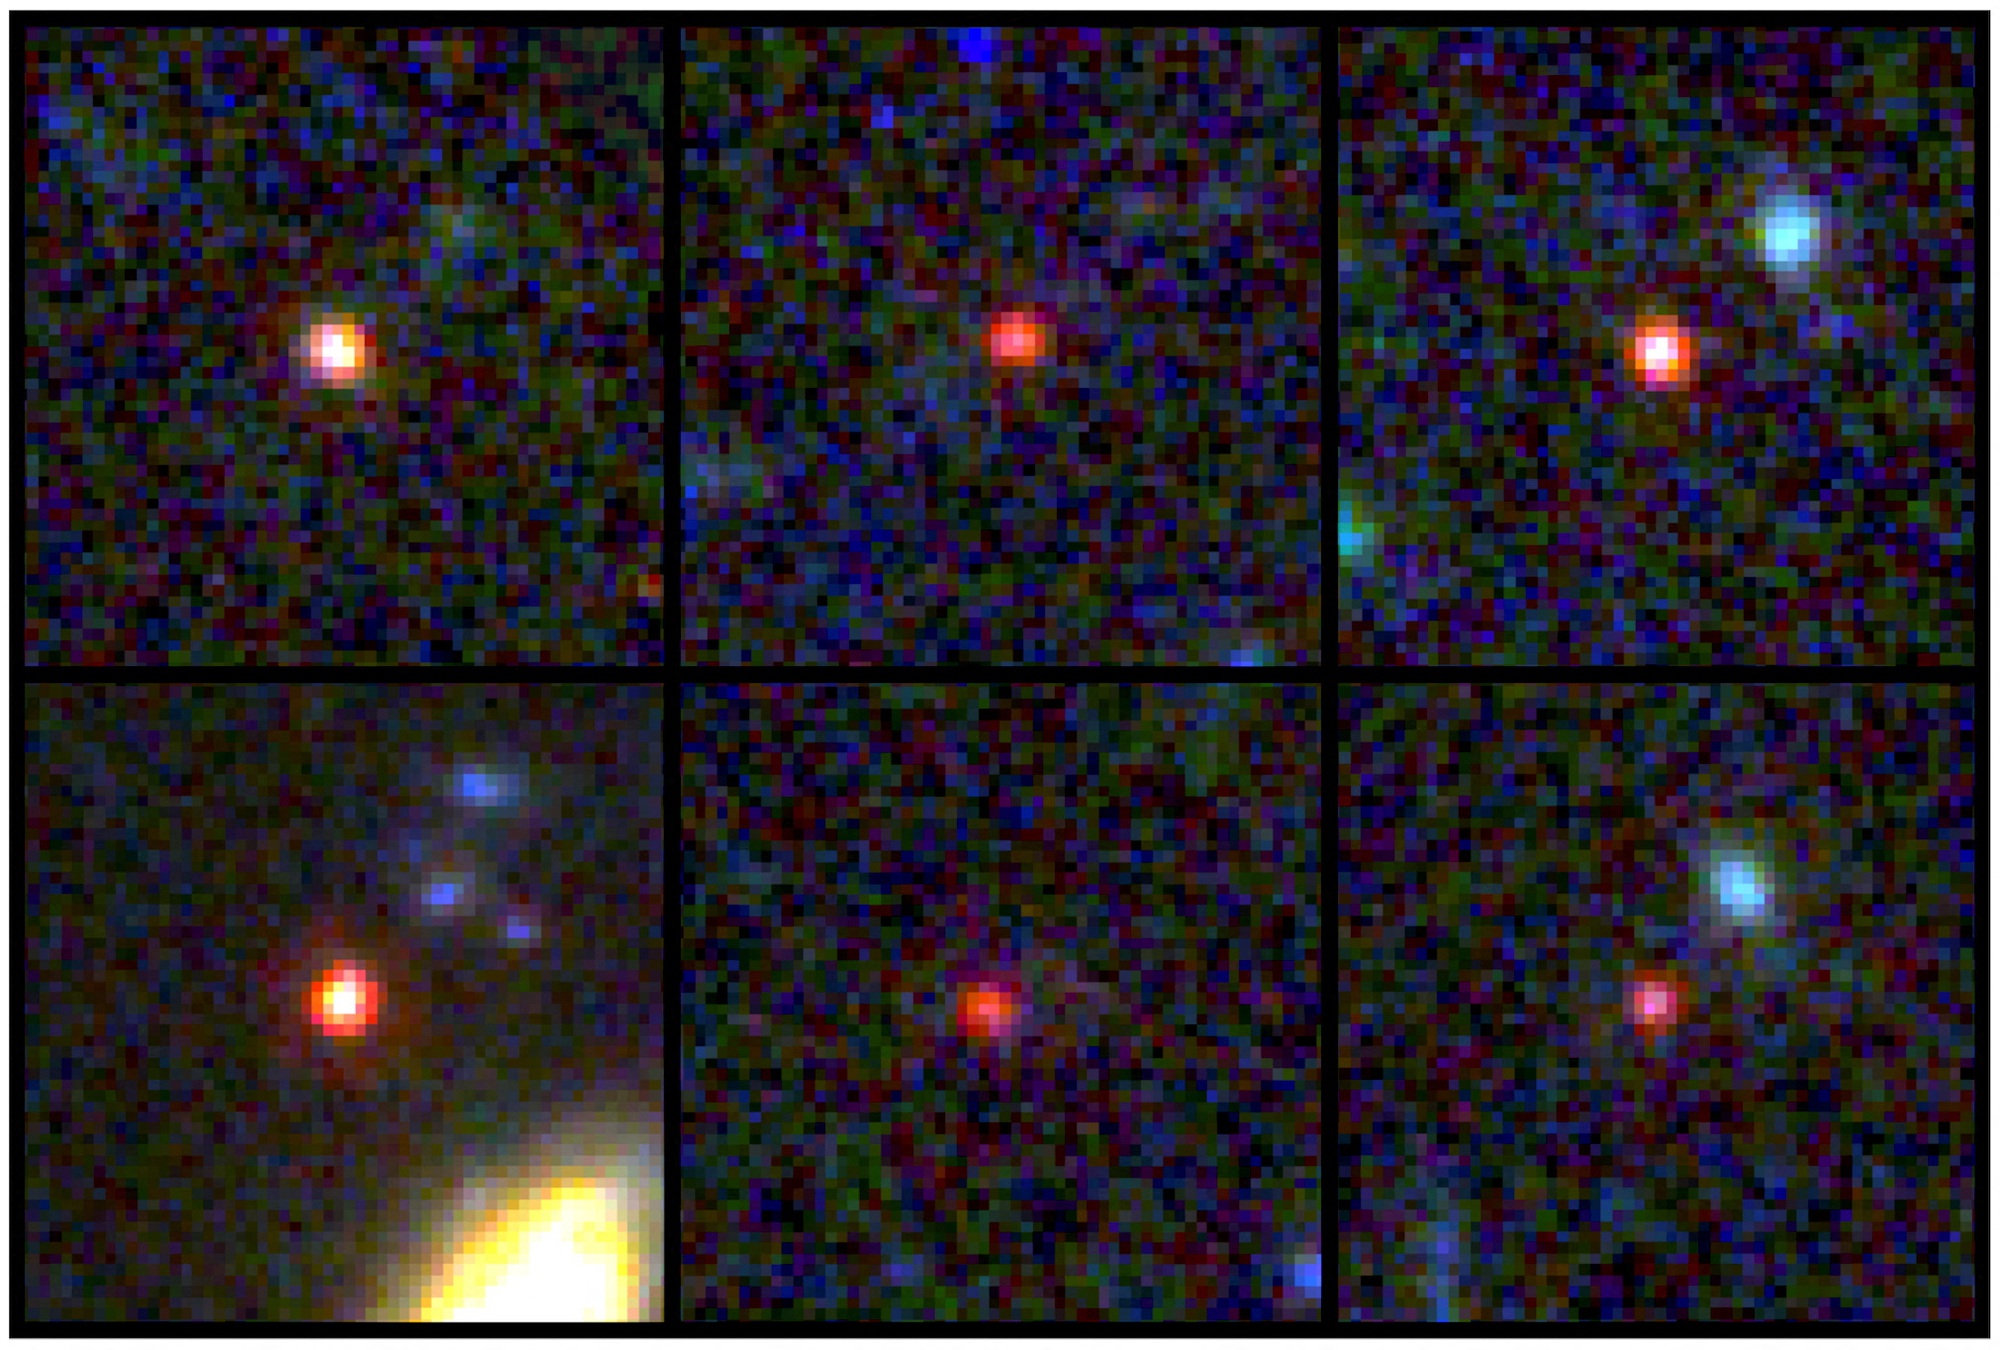 Kính James Webb phát hiện 6 thiên hà \'phá vỡ vũ trụ\'